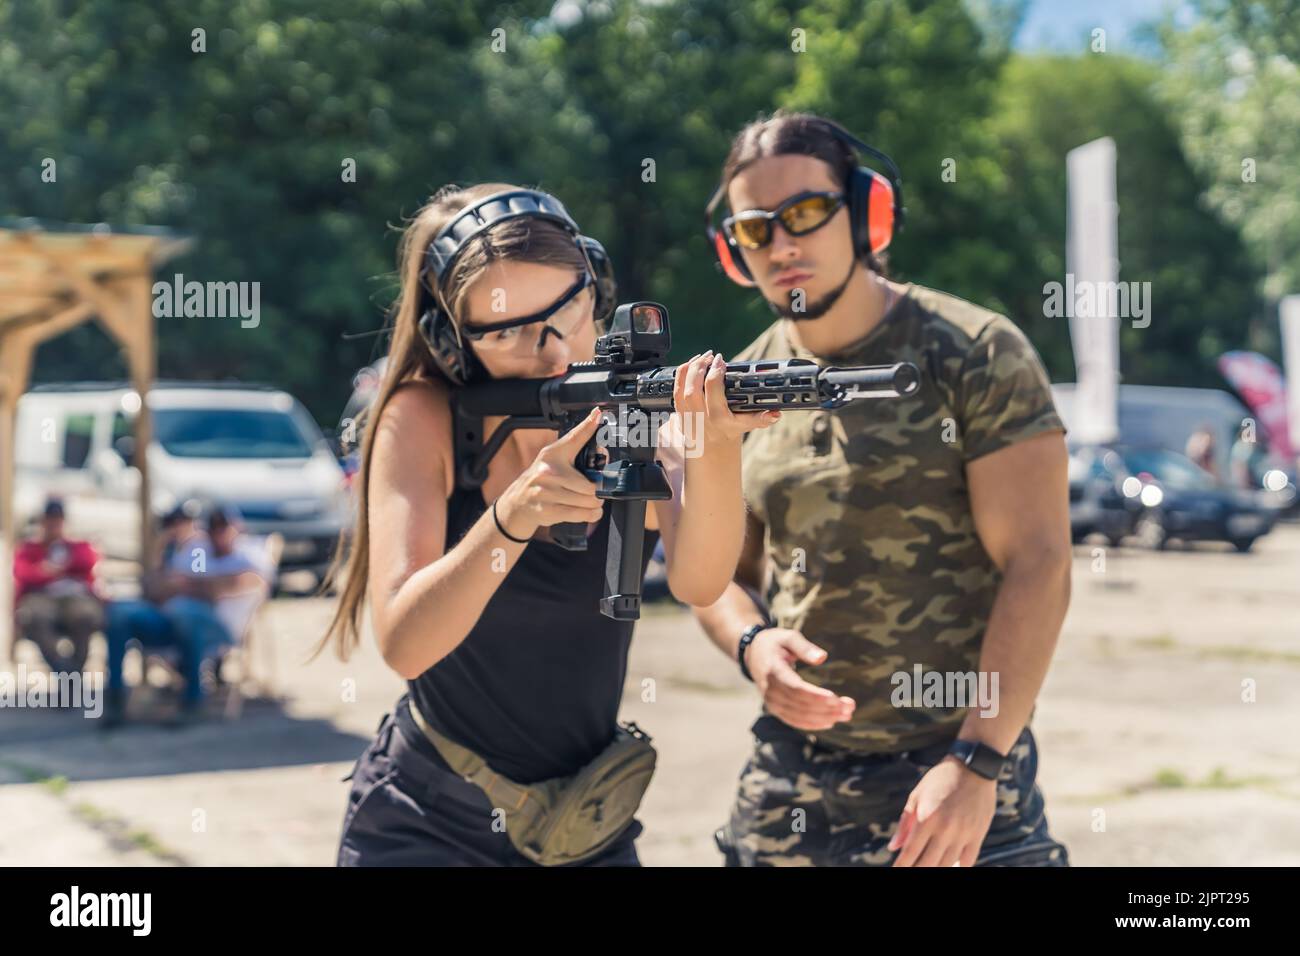 Bärtiger Mann im Camo-T-Shirt, der Frau beim Anpeilen der Maschinenpistole zusieht. Kopfhörer und Schutzbrille. Schusswaffentraining auf dem Schießstand. Horizontale Aufnahme im Freien. Hochwertige Fotos Stockfoto